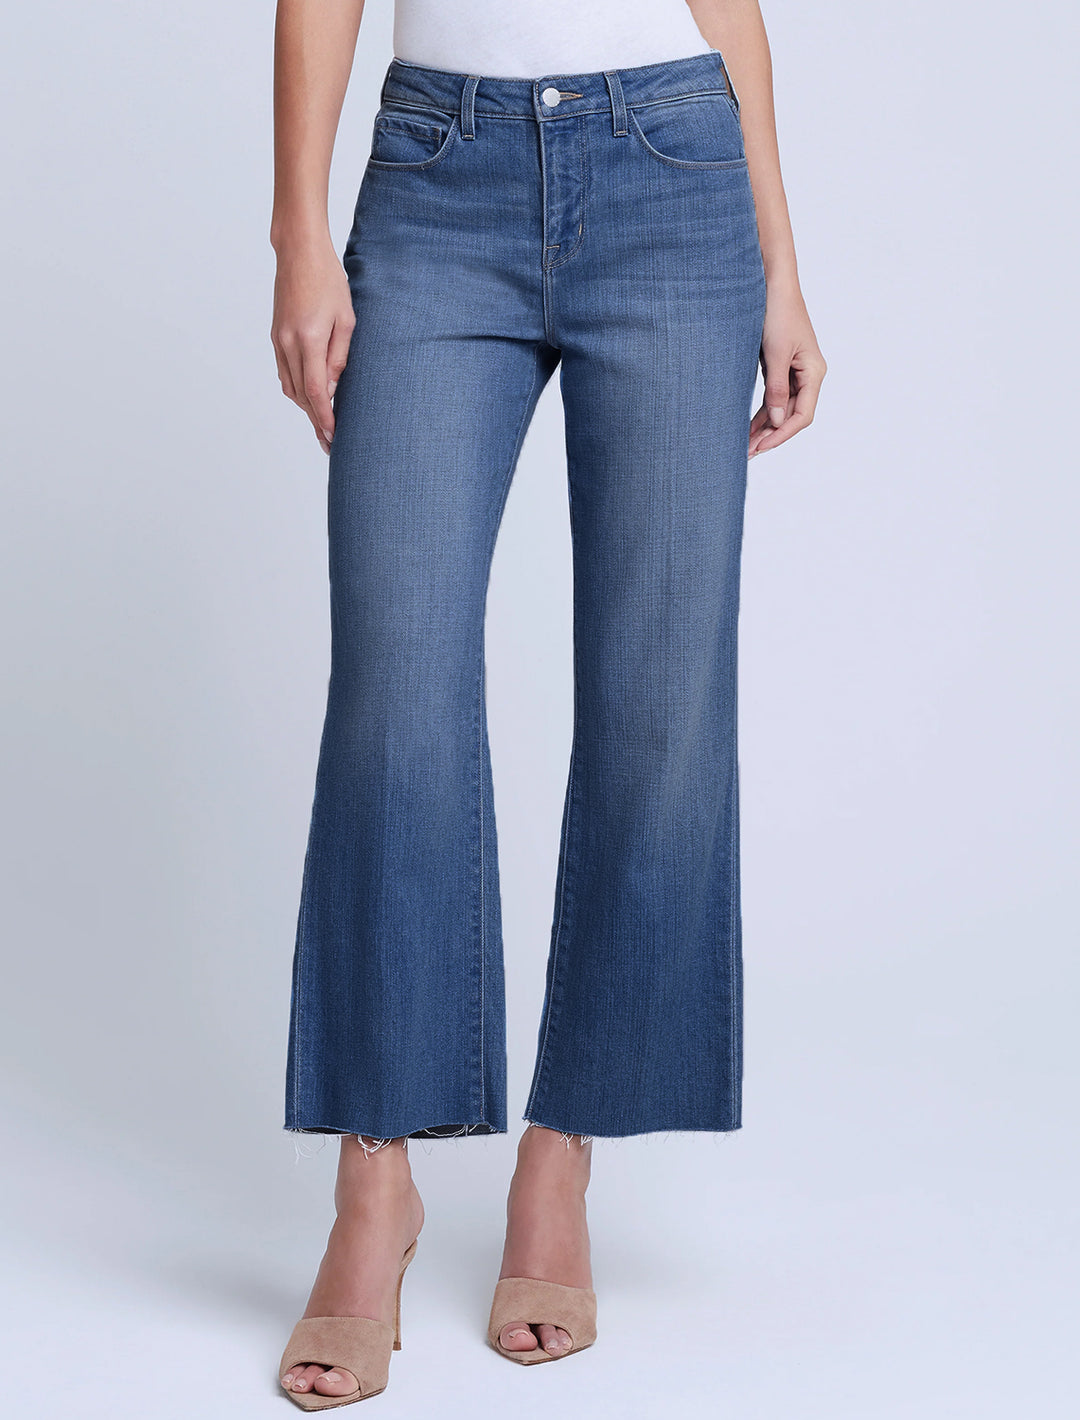 Model wearing L'agence's wanda jeans in bordello.